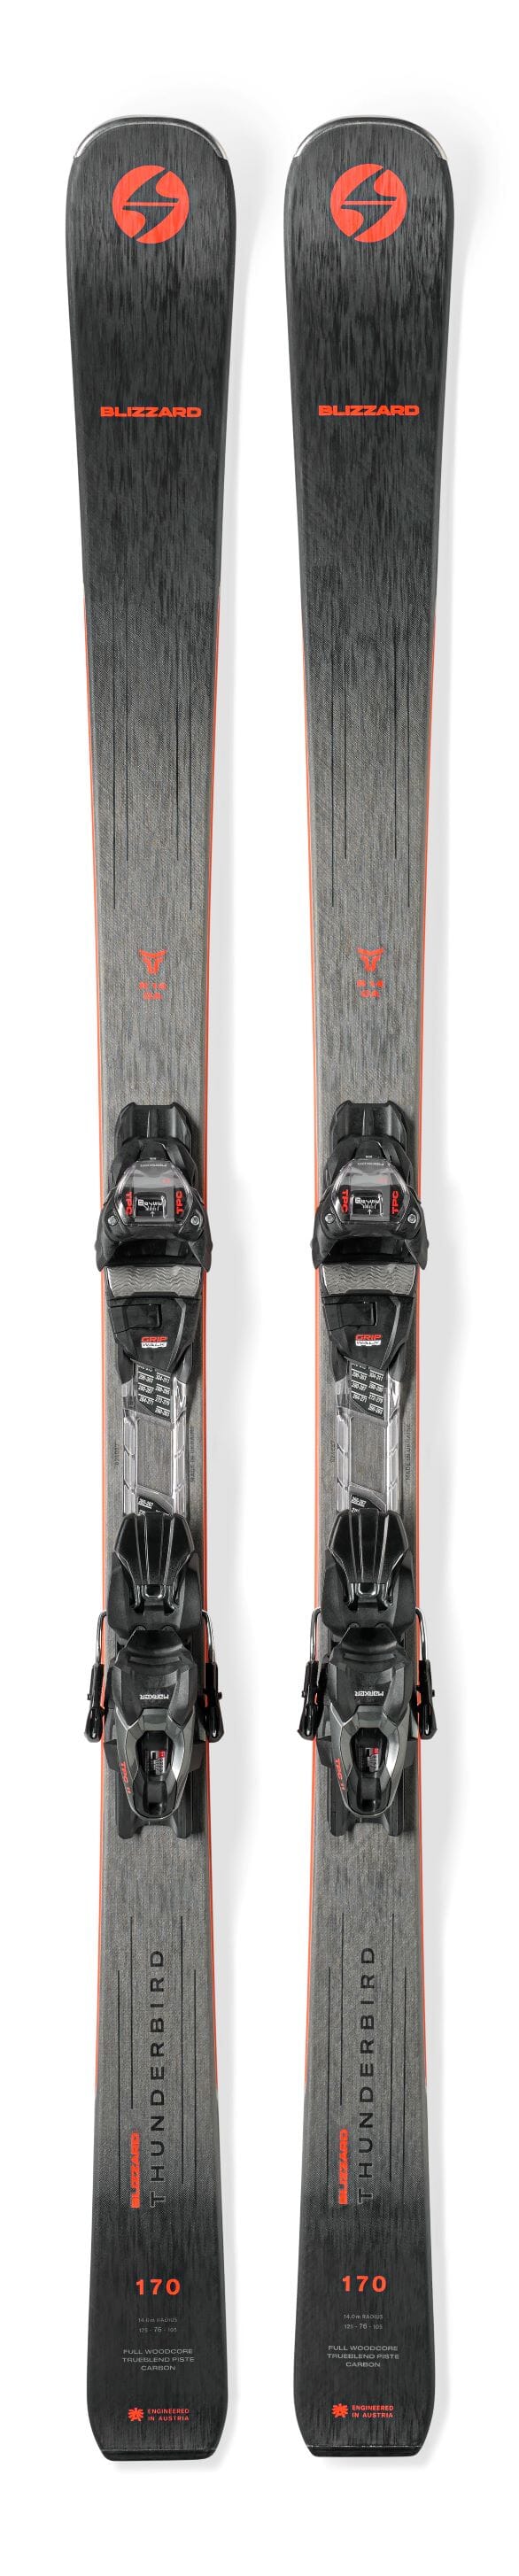 ブリザード スキー155cm-